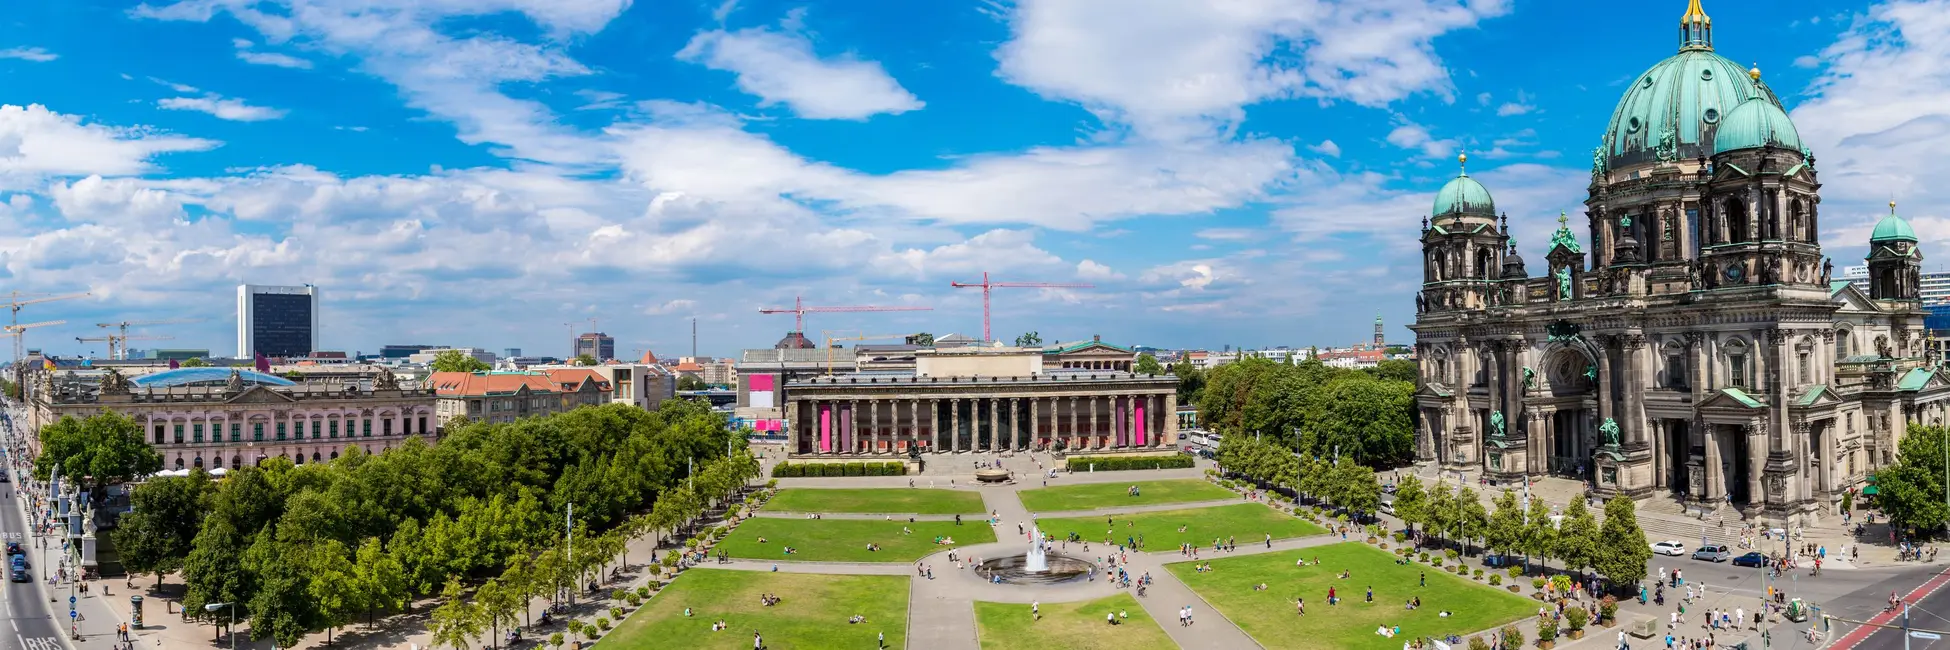 La cathédrale de Berlin et son jardin 